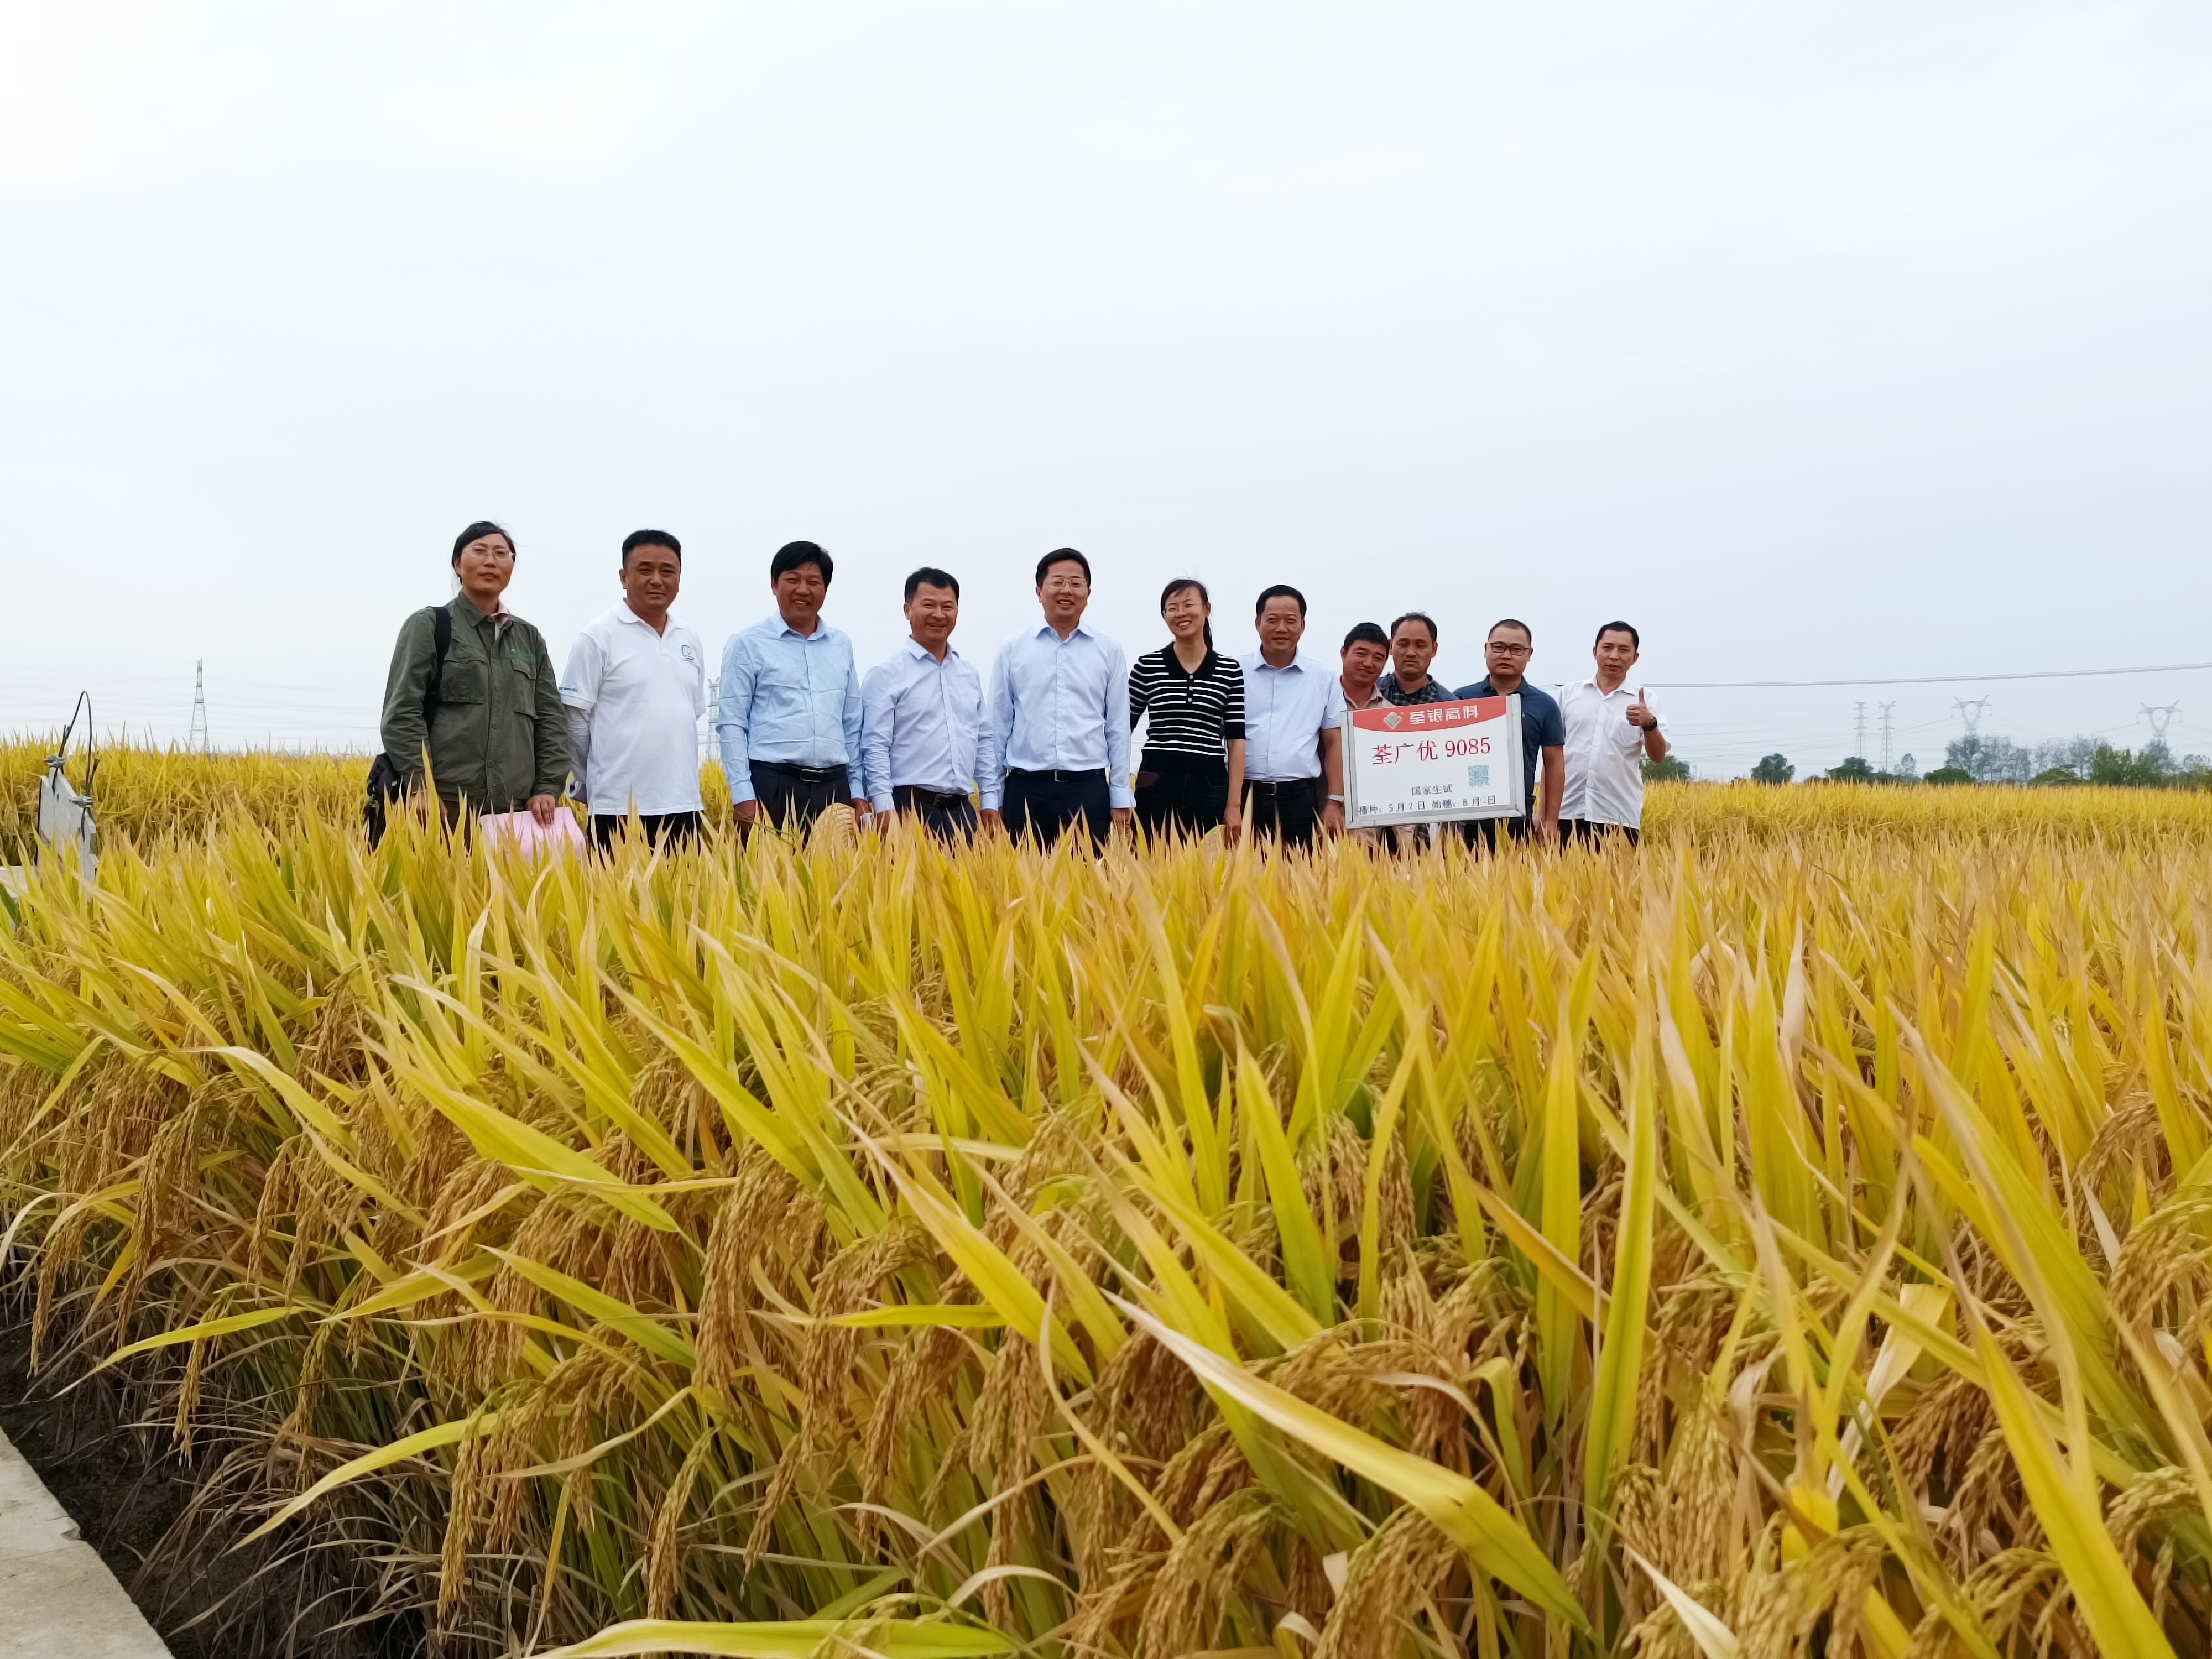 3-张从合副理事长陪同专家考察水稻试验基地.jpg